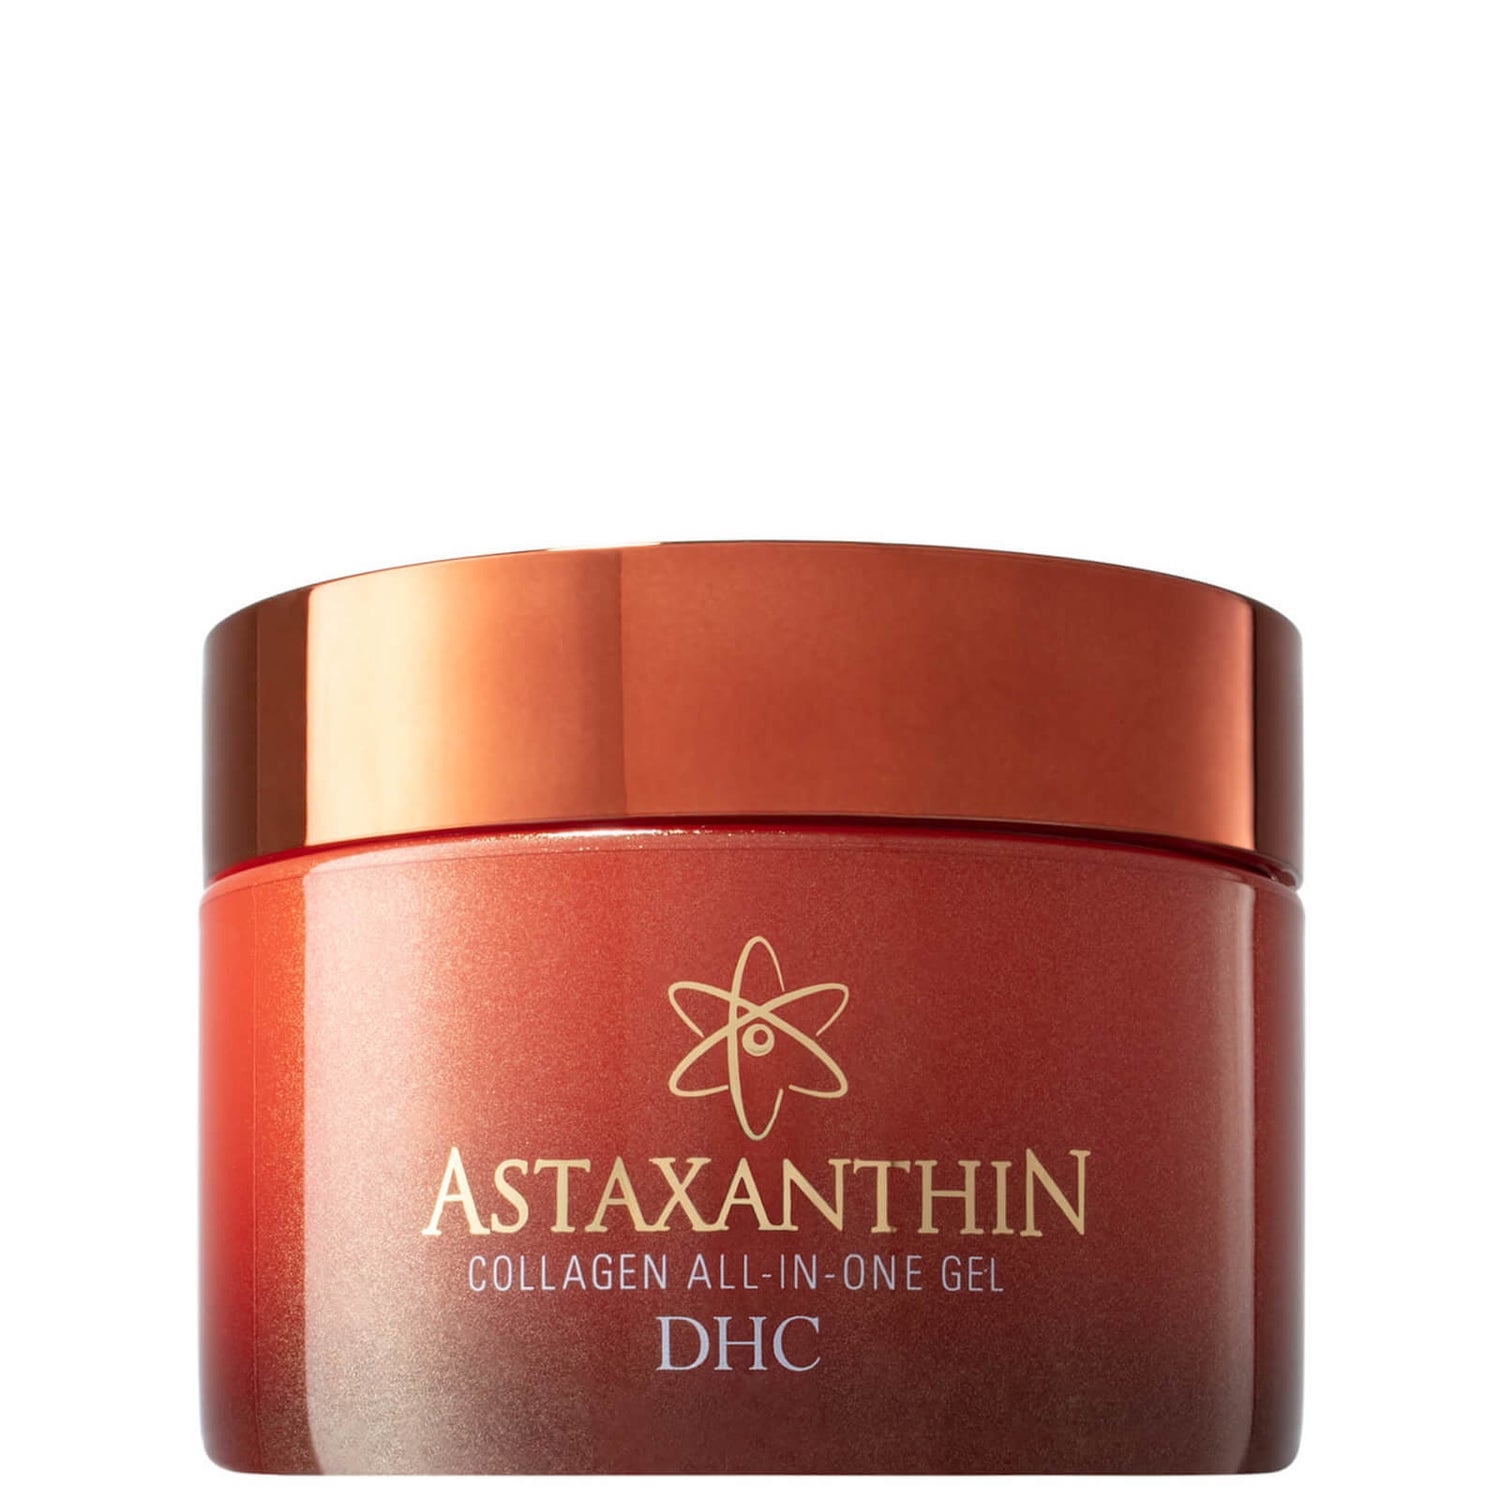 DHC Astaxanthin Collagen All-in-One Gel (4.2 oz.)